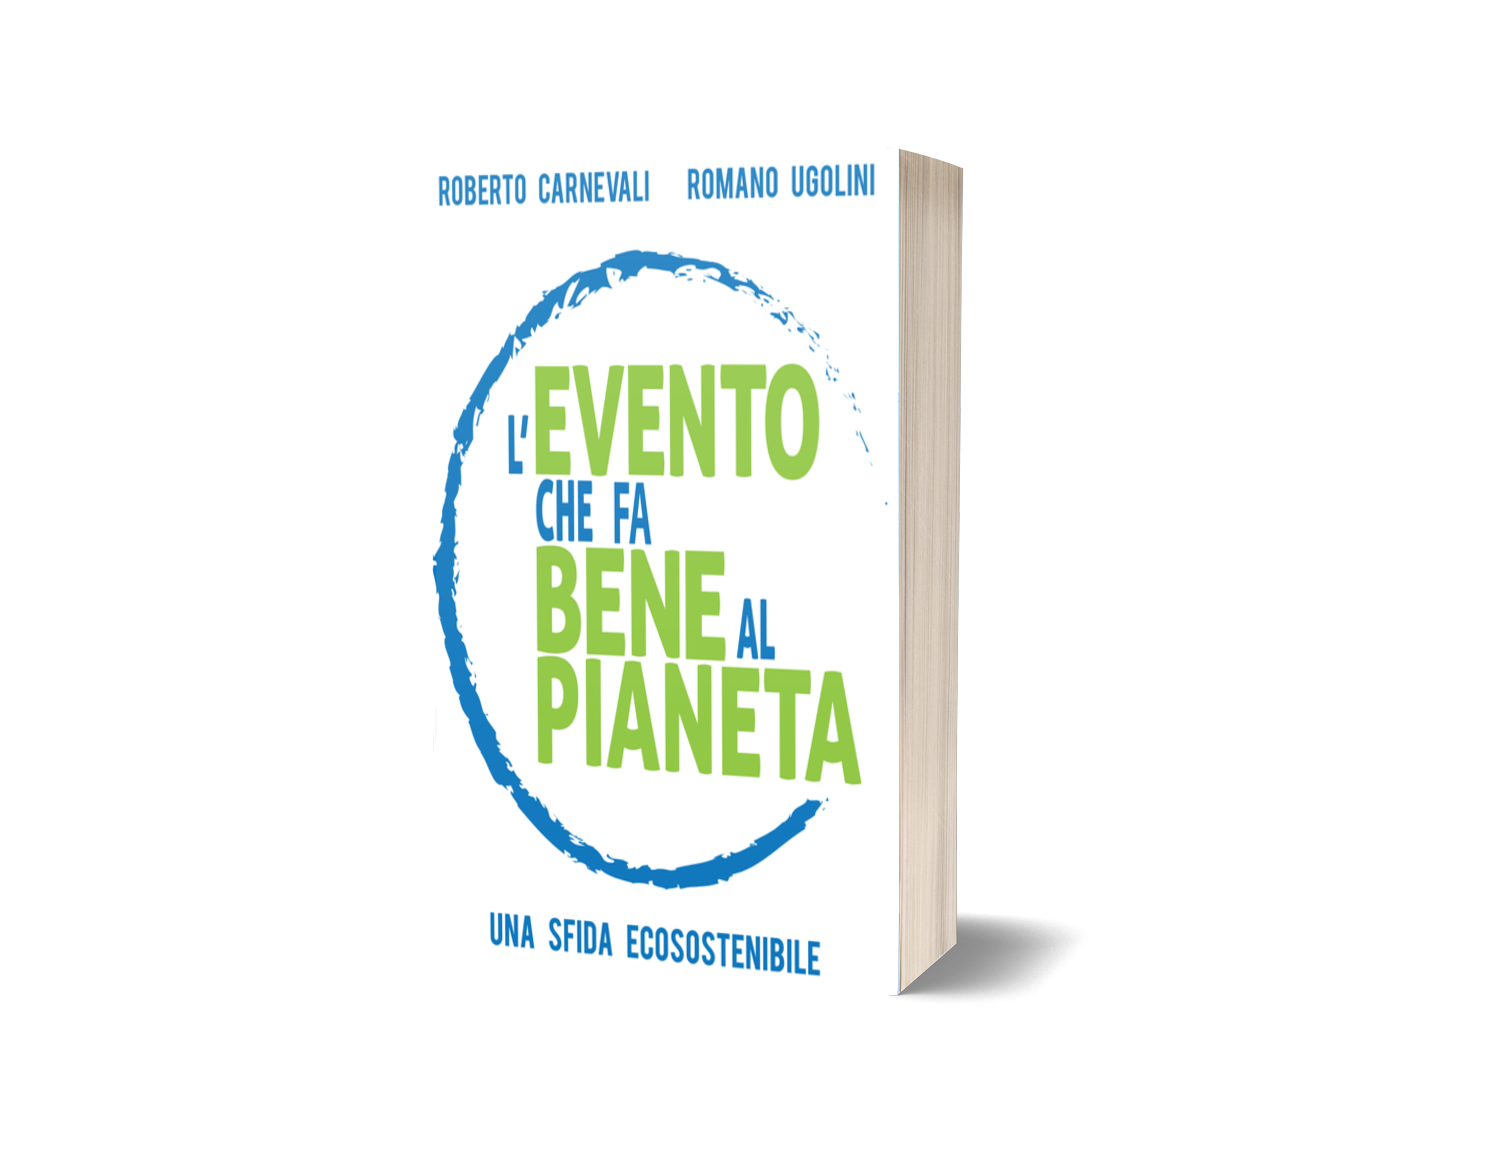 Immagine del libro 'L'evento che fa bene al pianeta' - di Roberto Carnevali e Romano Ugolini, in copertina una scritta verde con un mondo stilizzato